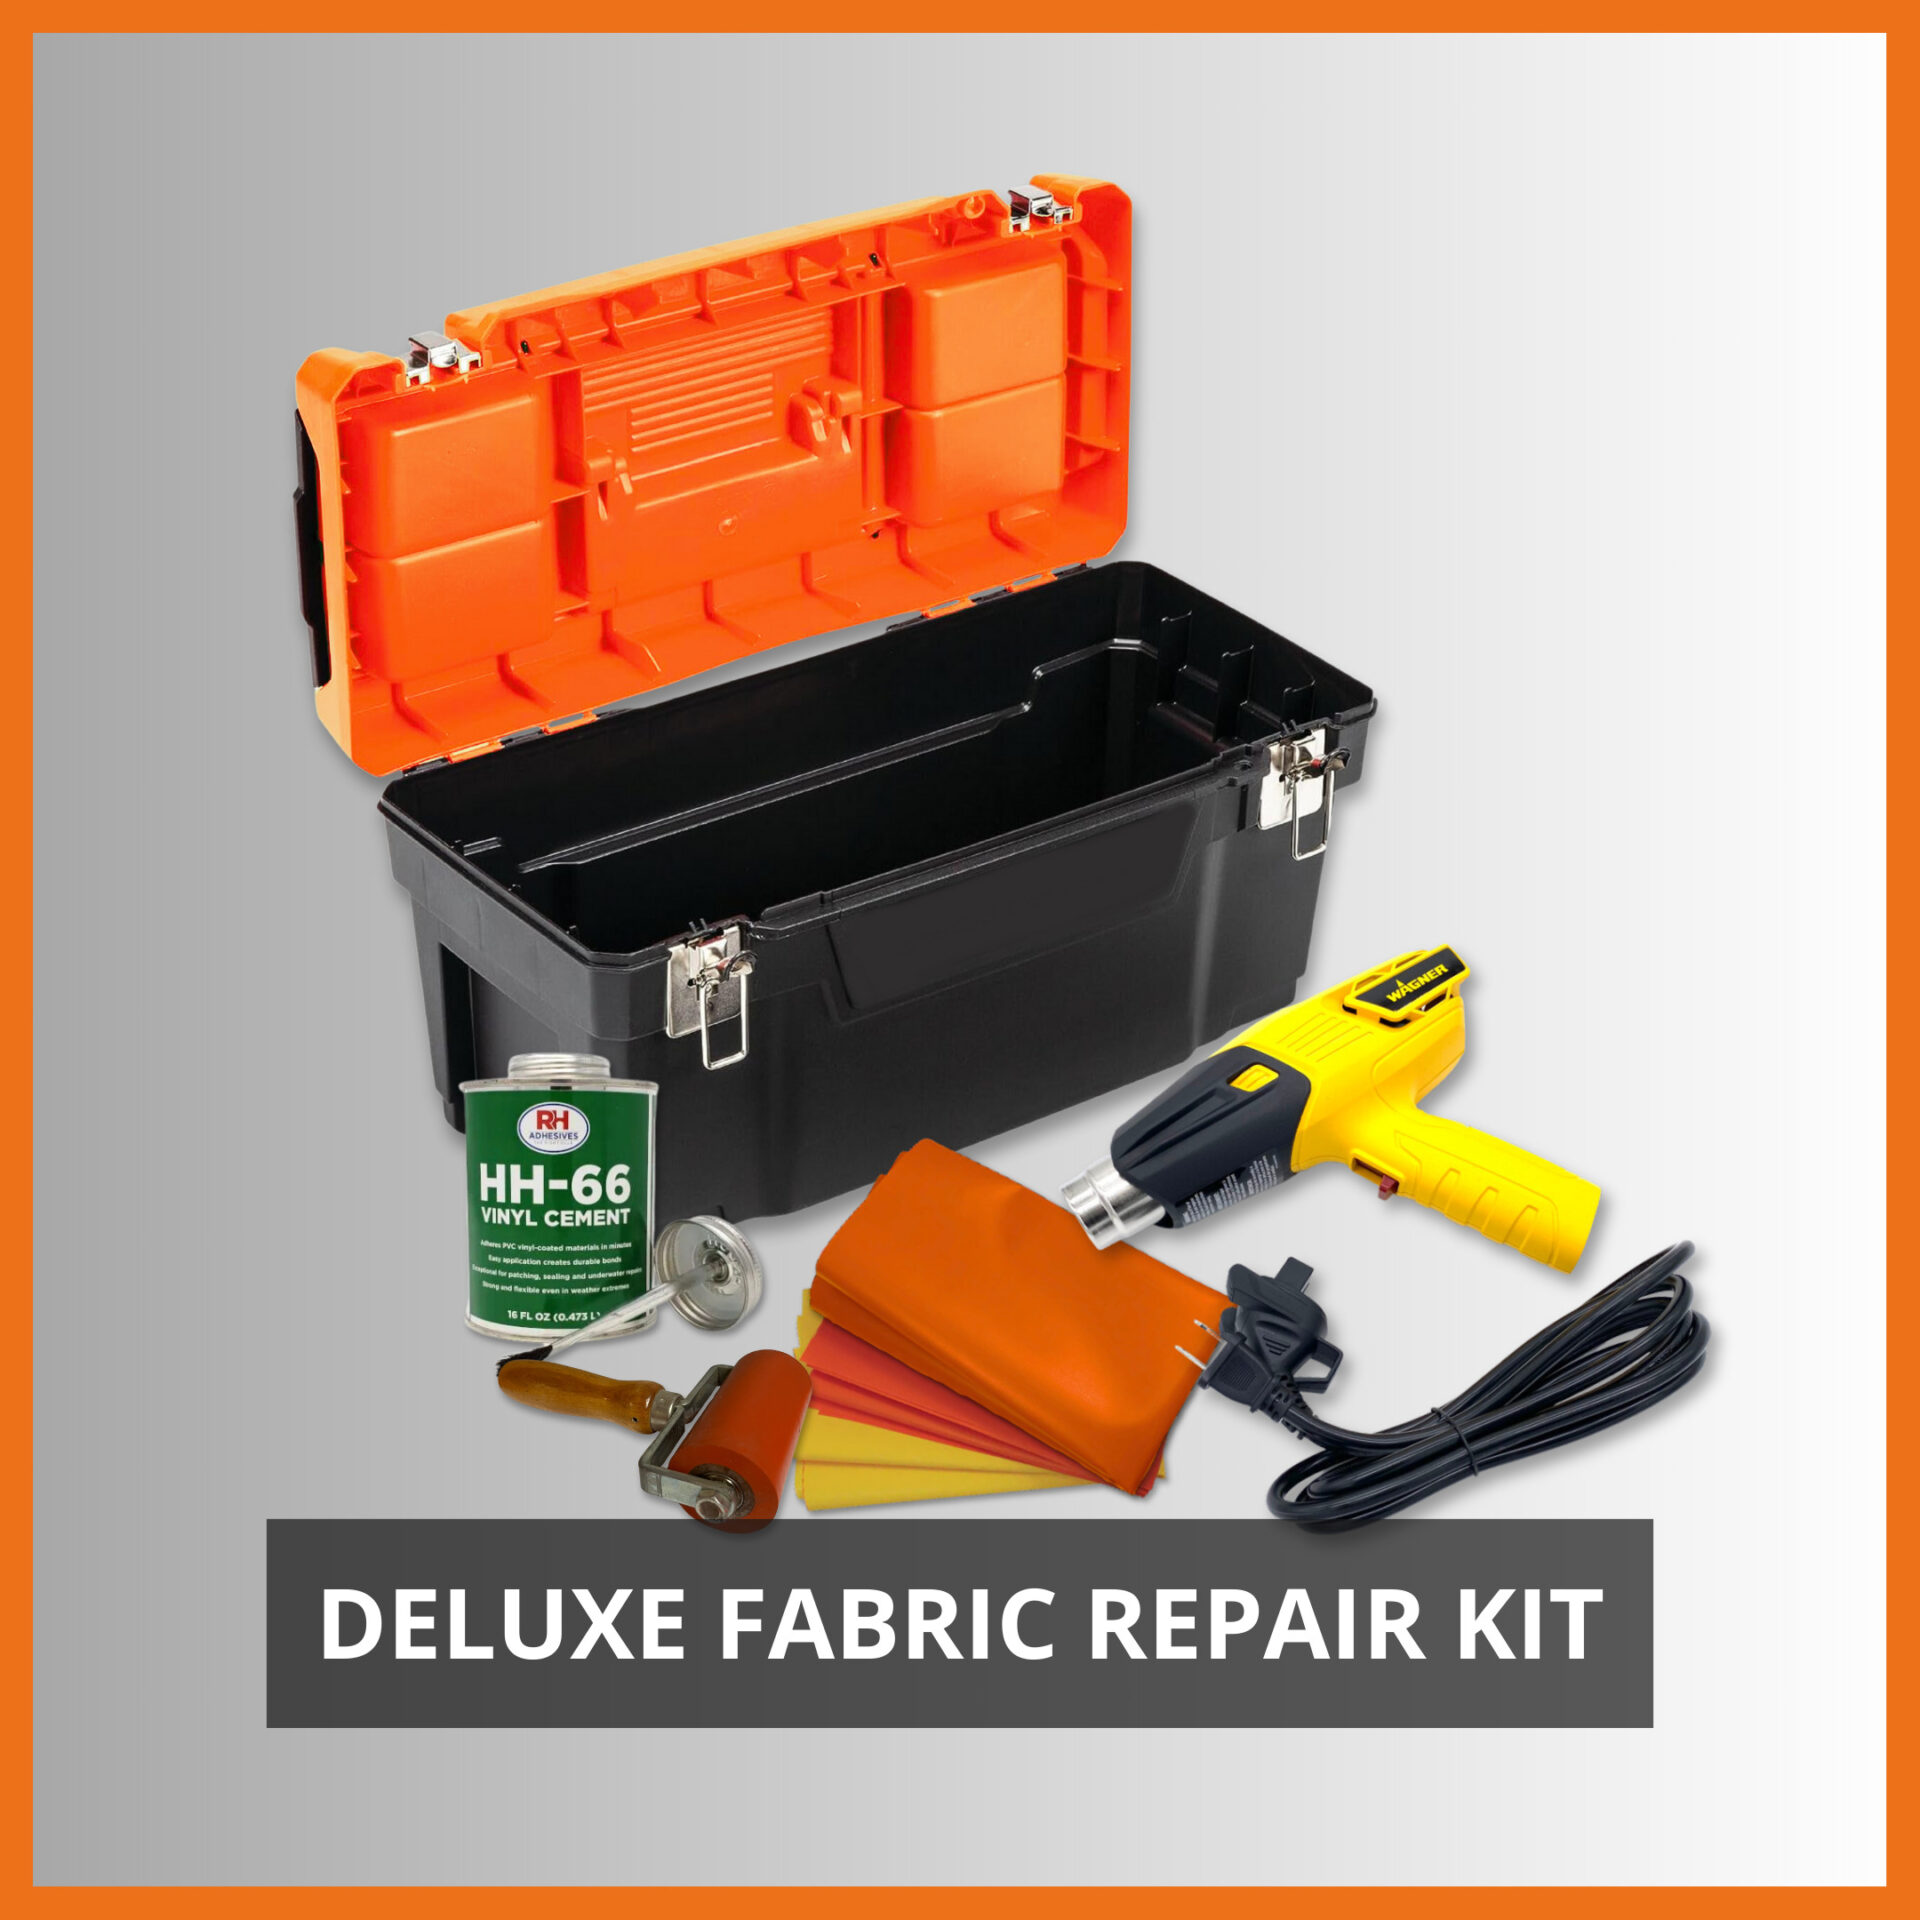 ACME Deluxe Fabric Repair Kit